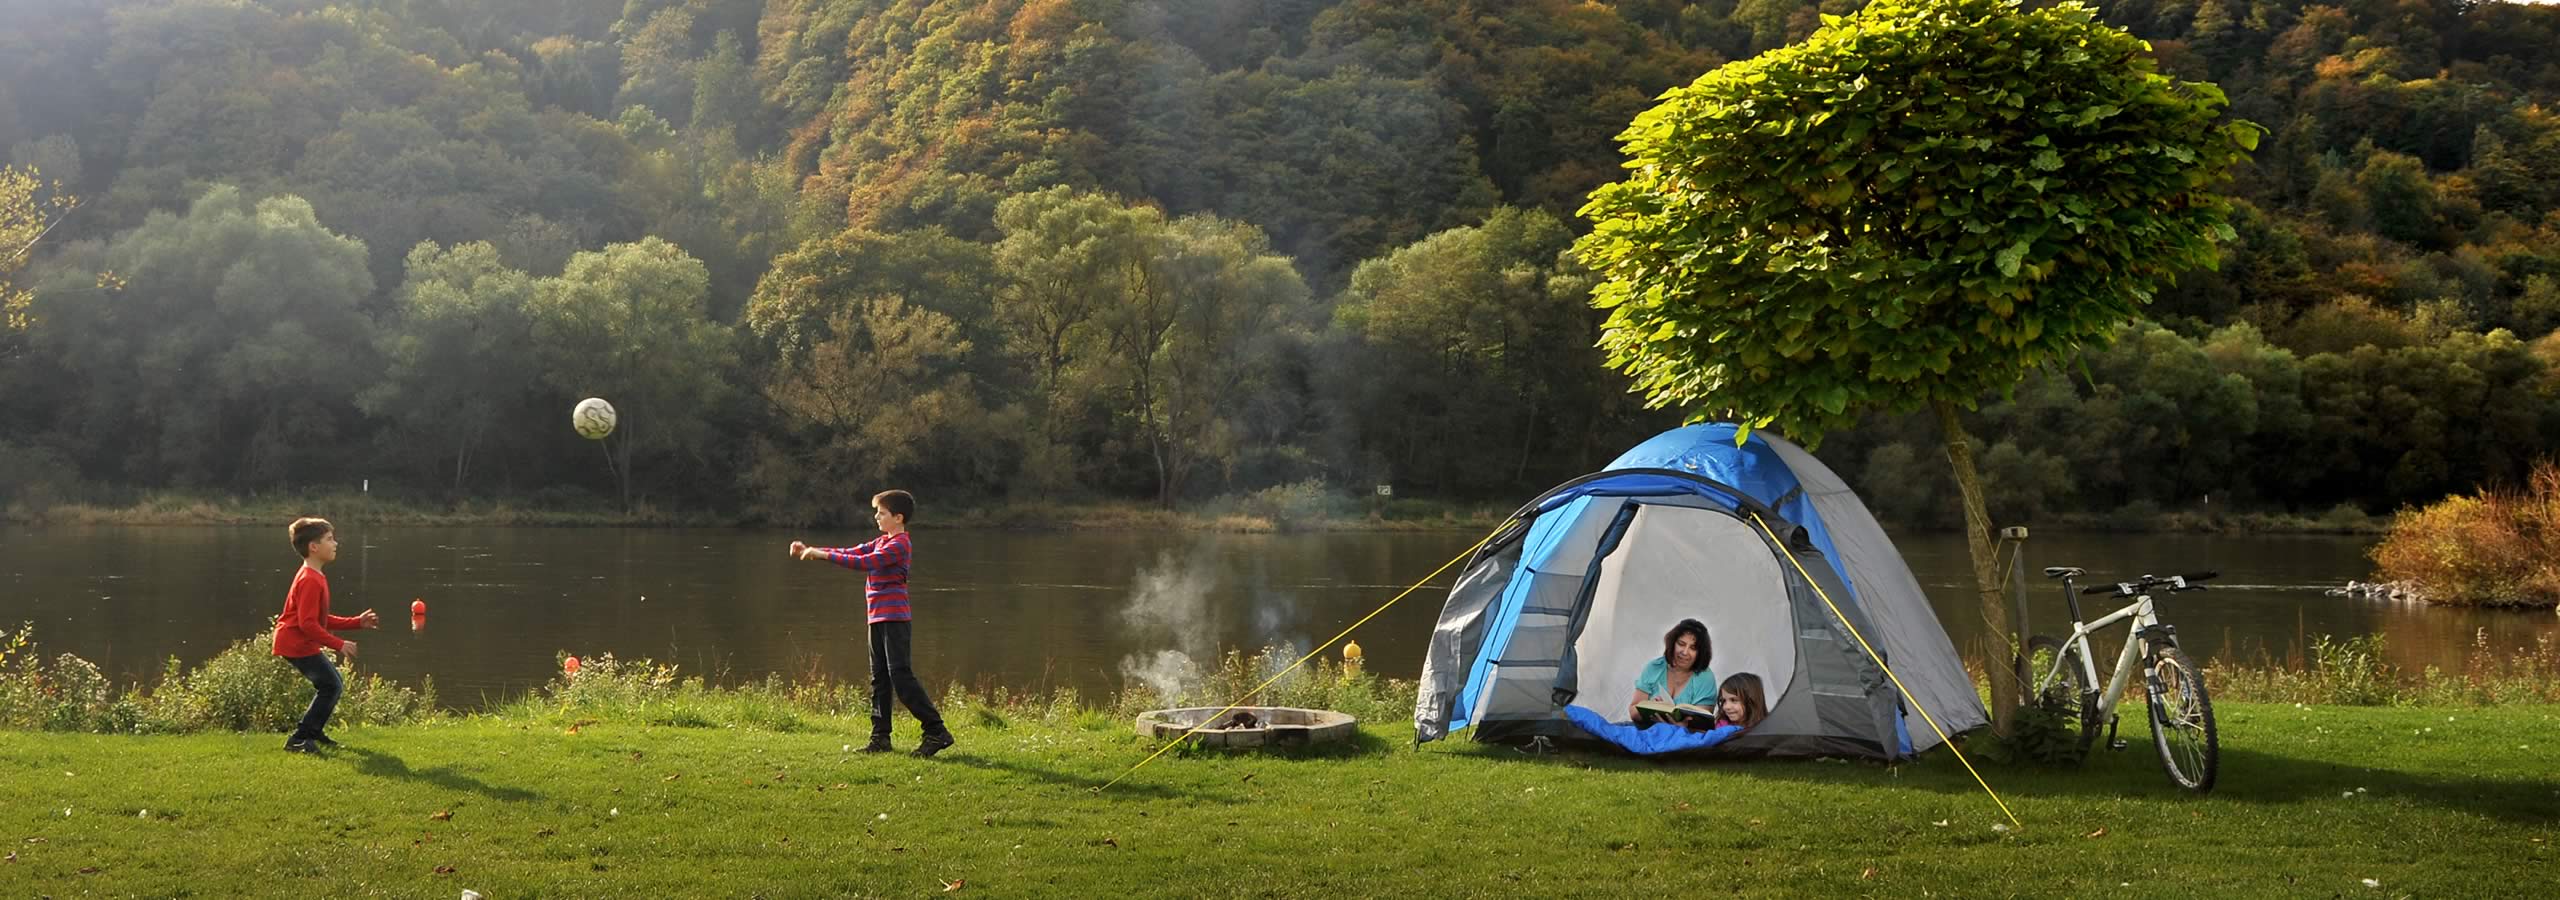 Campingplatz "Zum Feuerberg": Natur genießen - Lebensfreude wecken